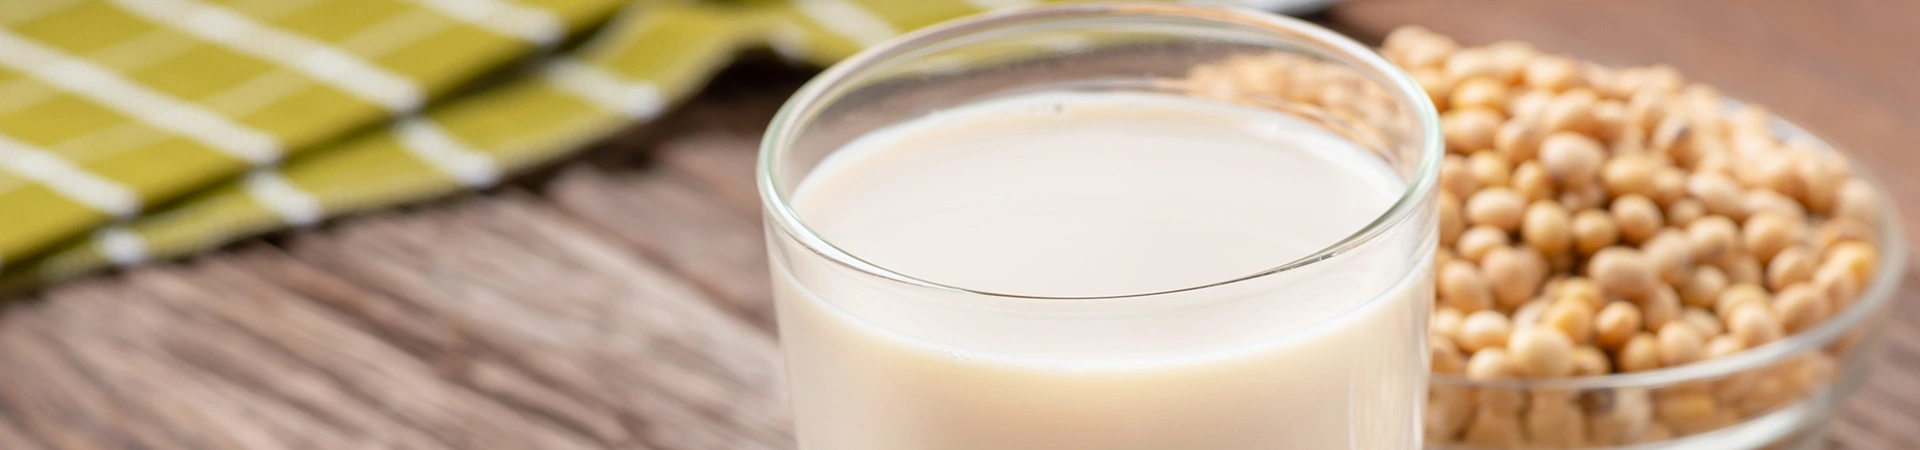 kelebihan susu formula soya berserat